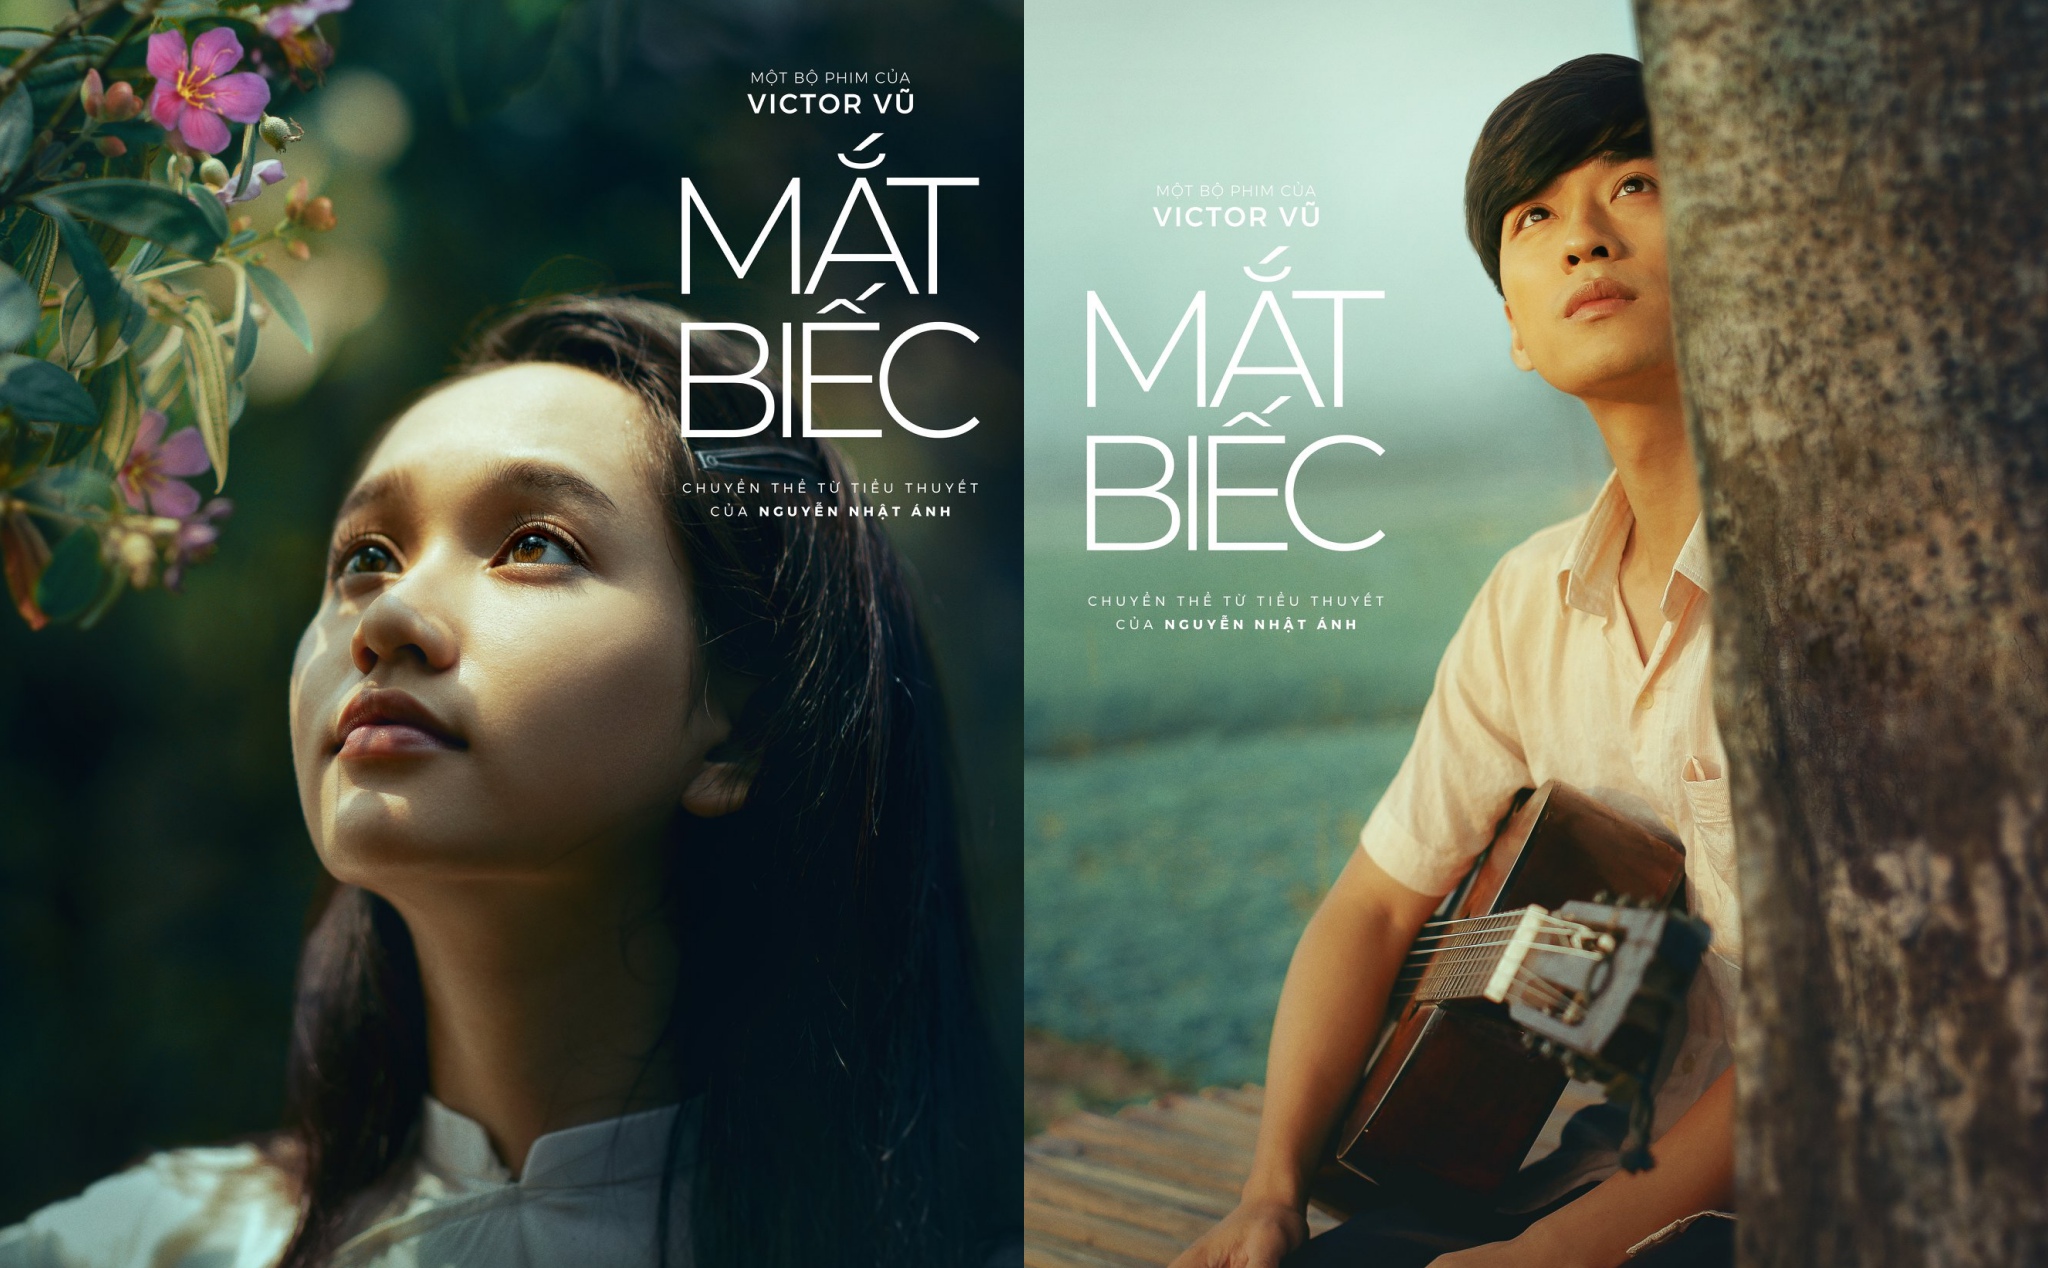 Phim Mắt Biếc ra mắt poster tuyệt đẹp nhân ngày Nhà Giáo Việt Nam